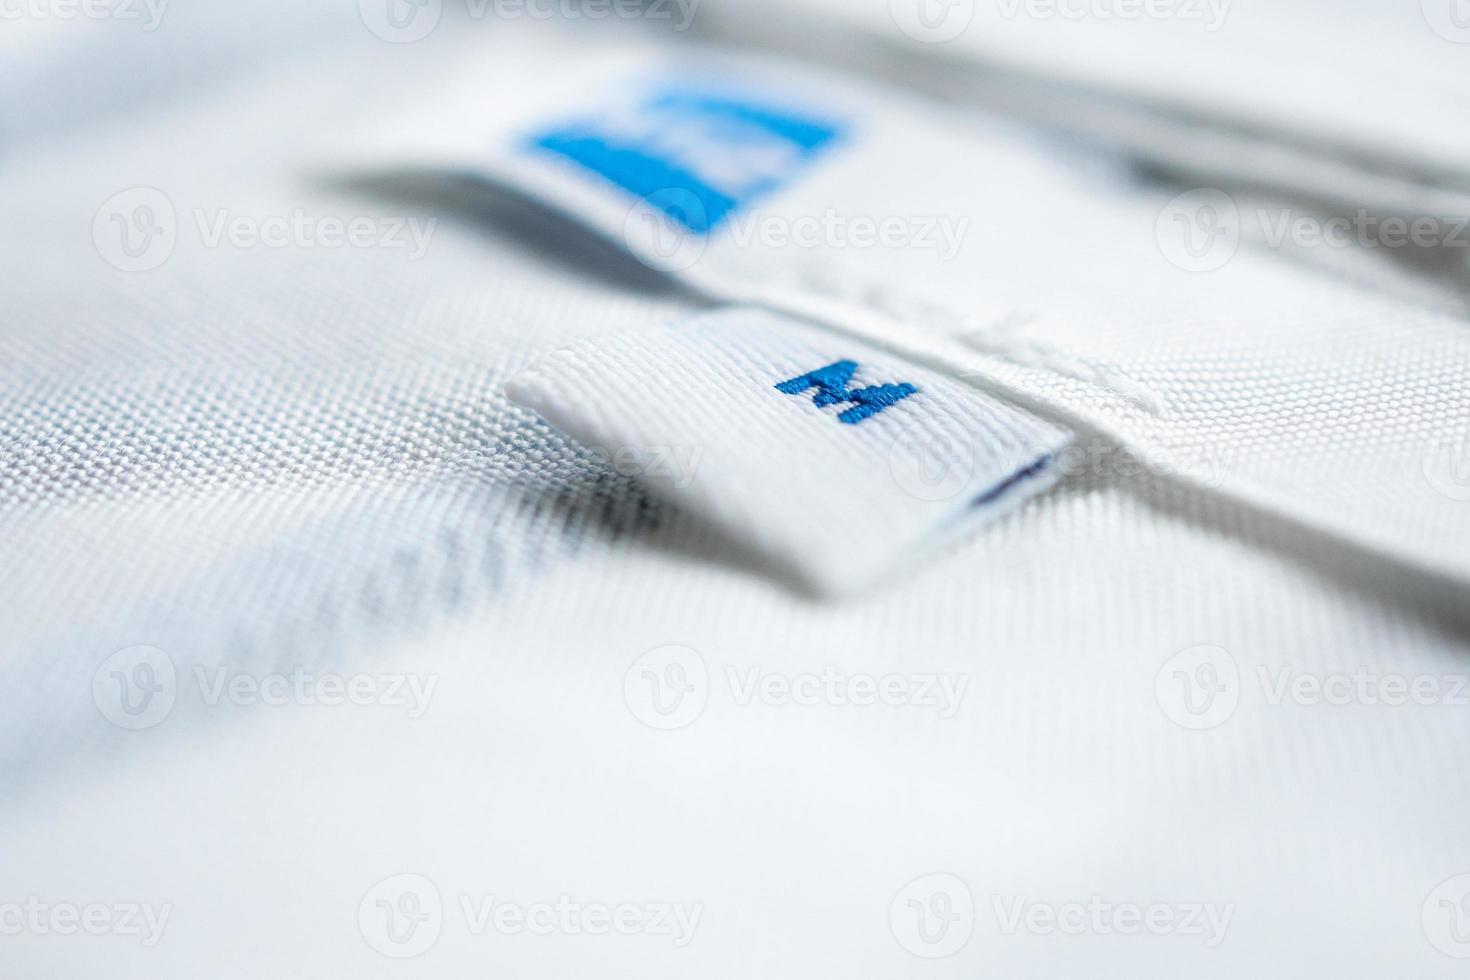 etiqueta de ropa blanca de cerca en una camisa nueva foto